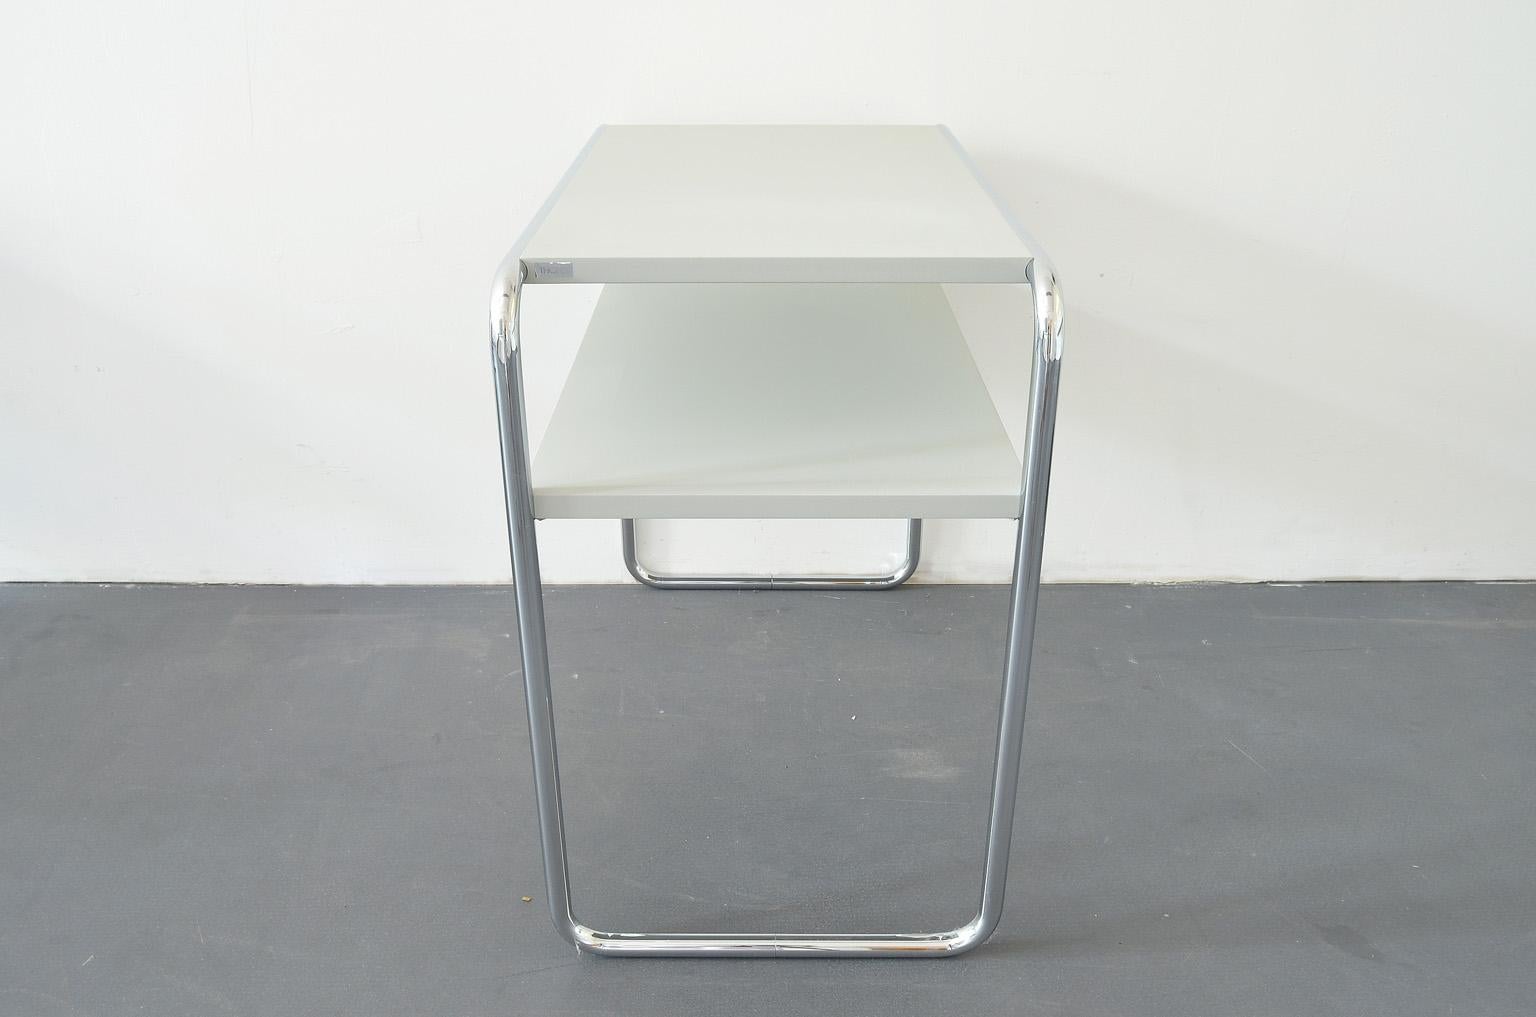 Bauhaus B9d/1 Nesting Table Designed by Marcel Breuer for Thonet, Light Grey